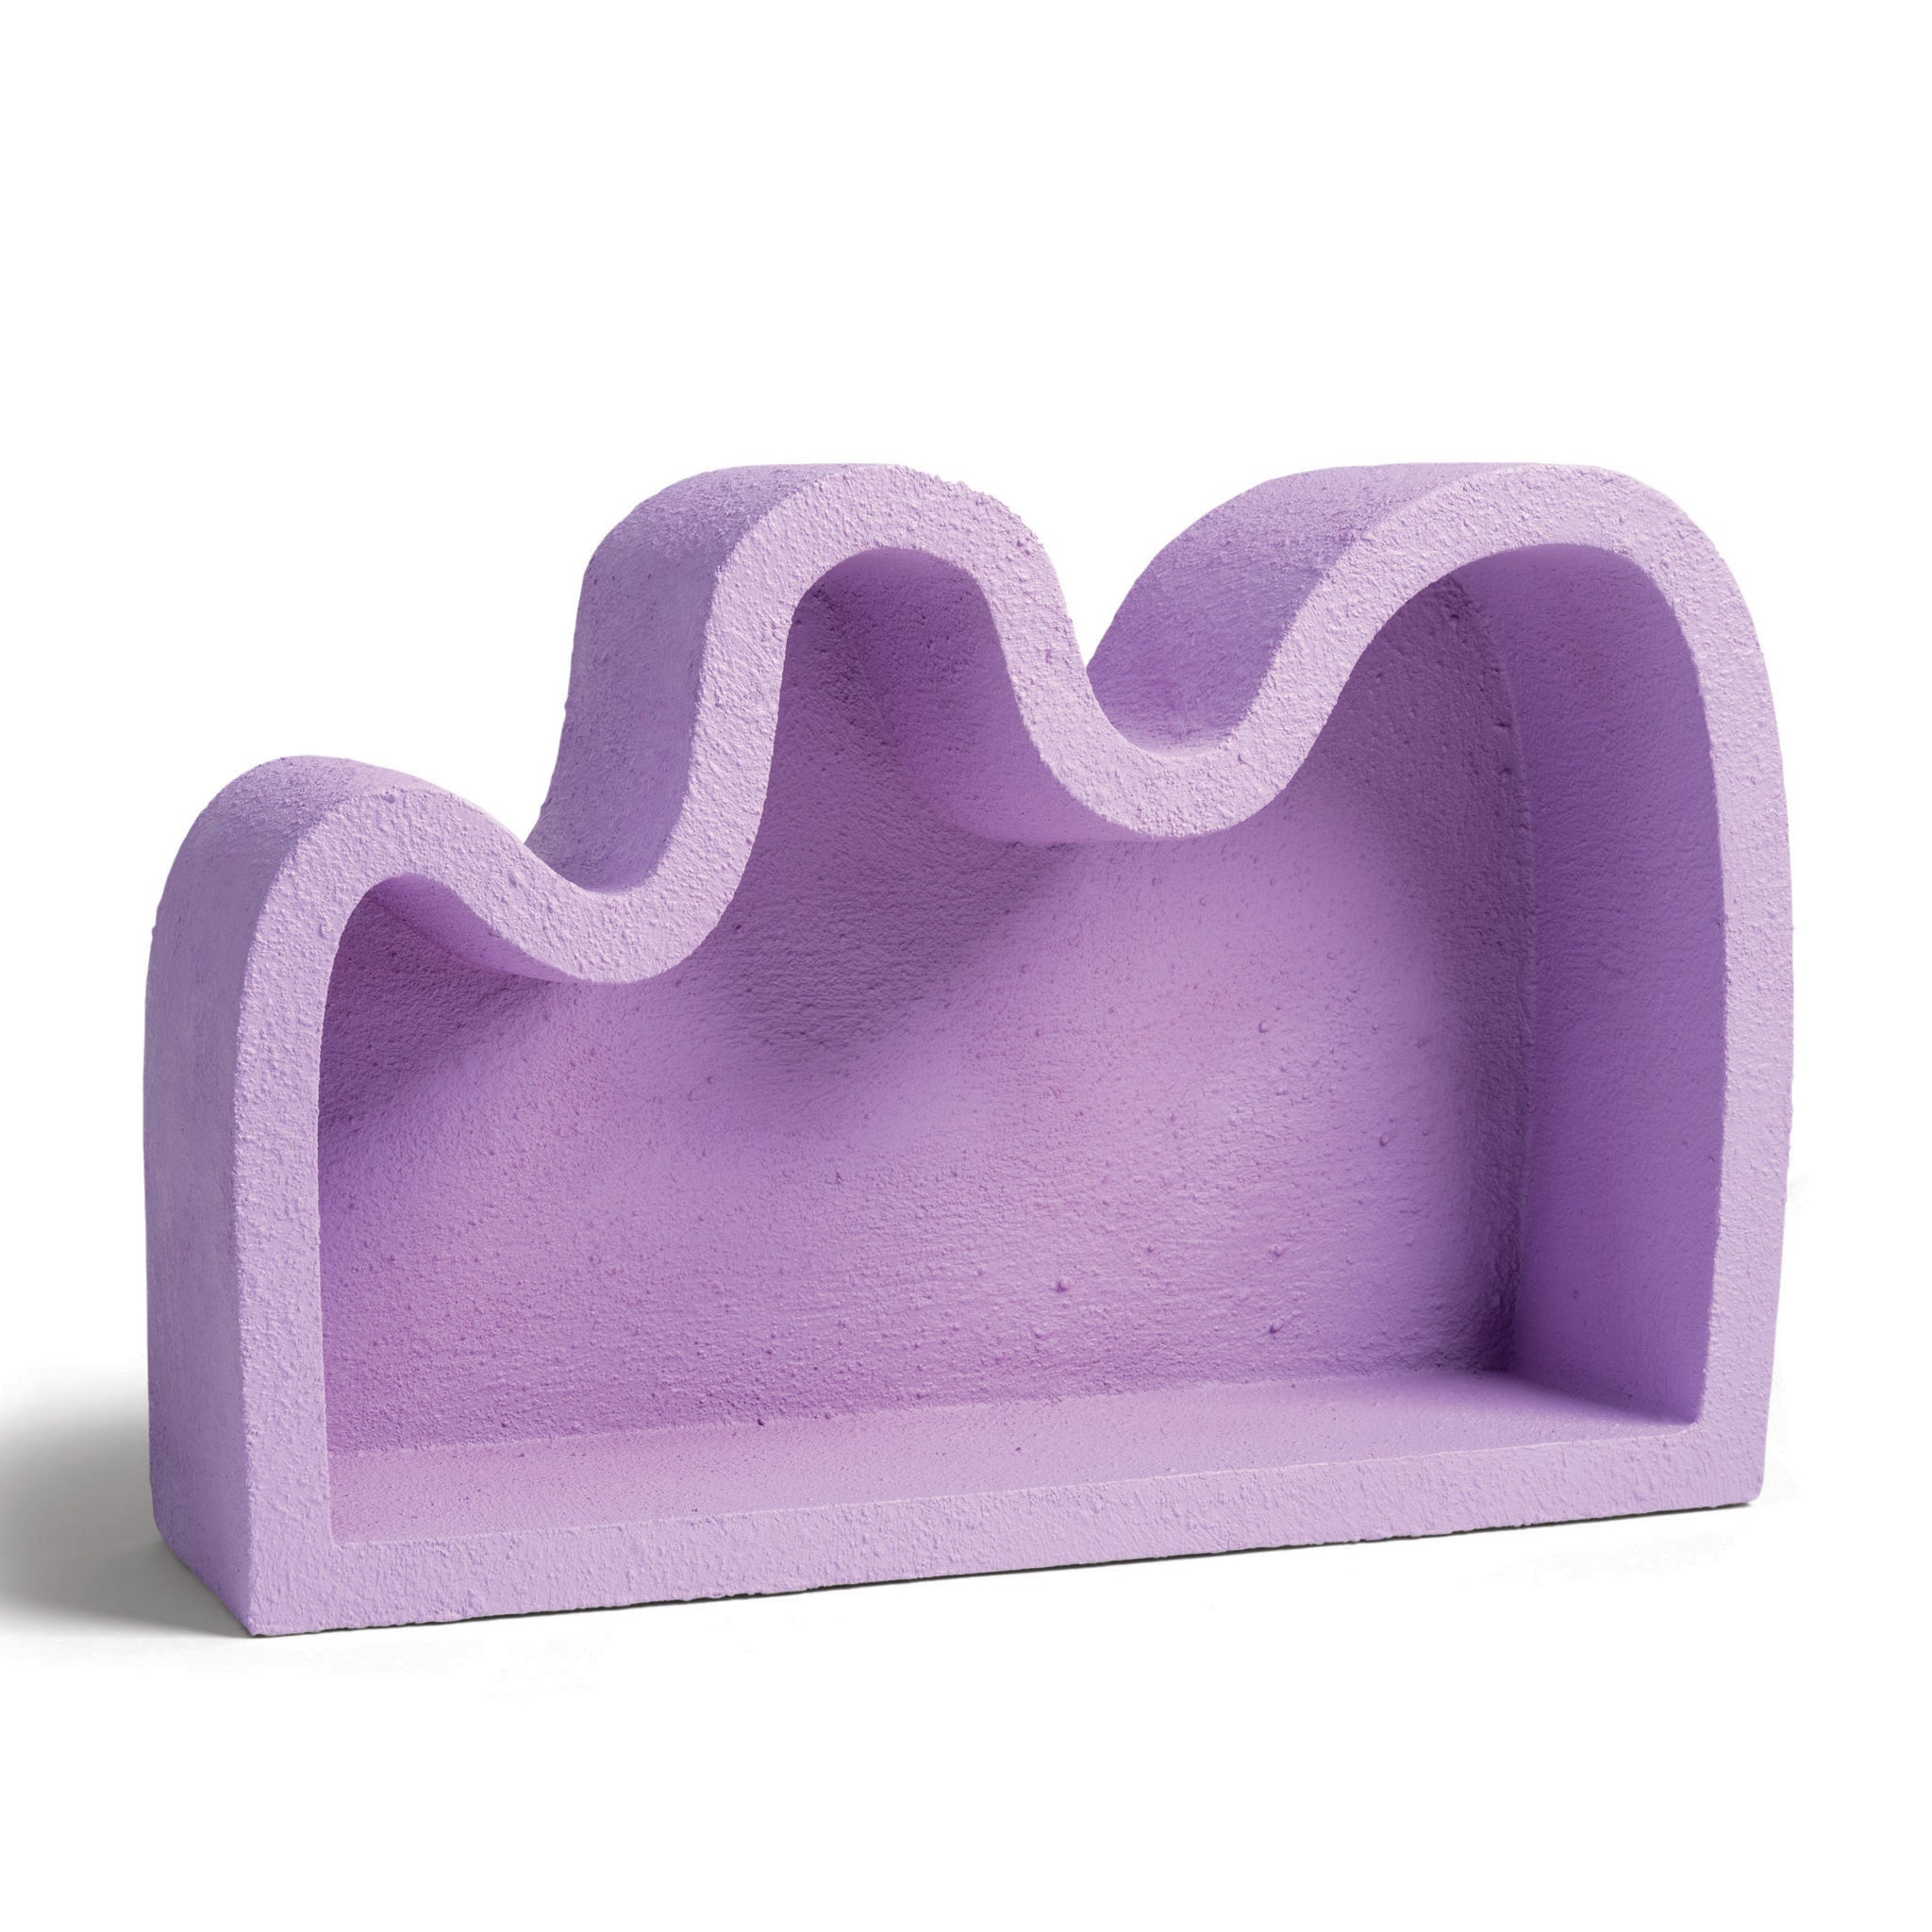 Wonky Lilac Shelf &Klevering